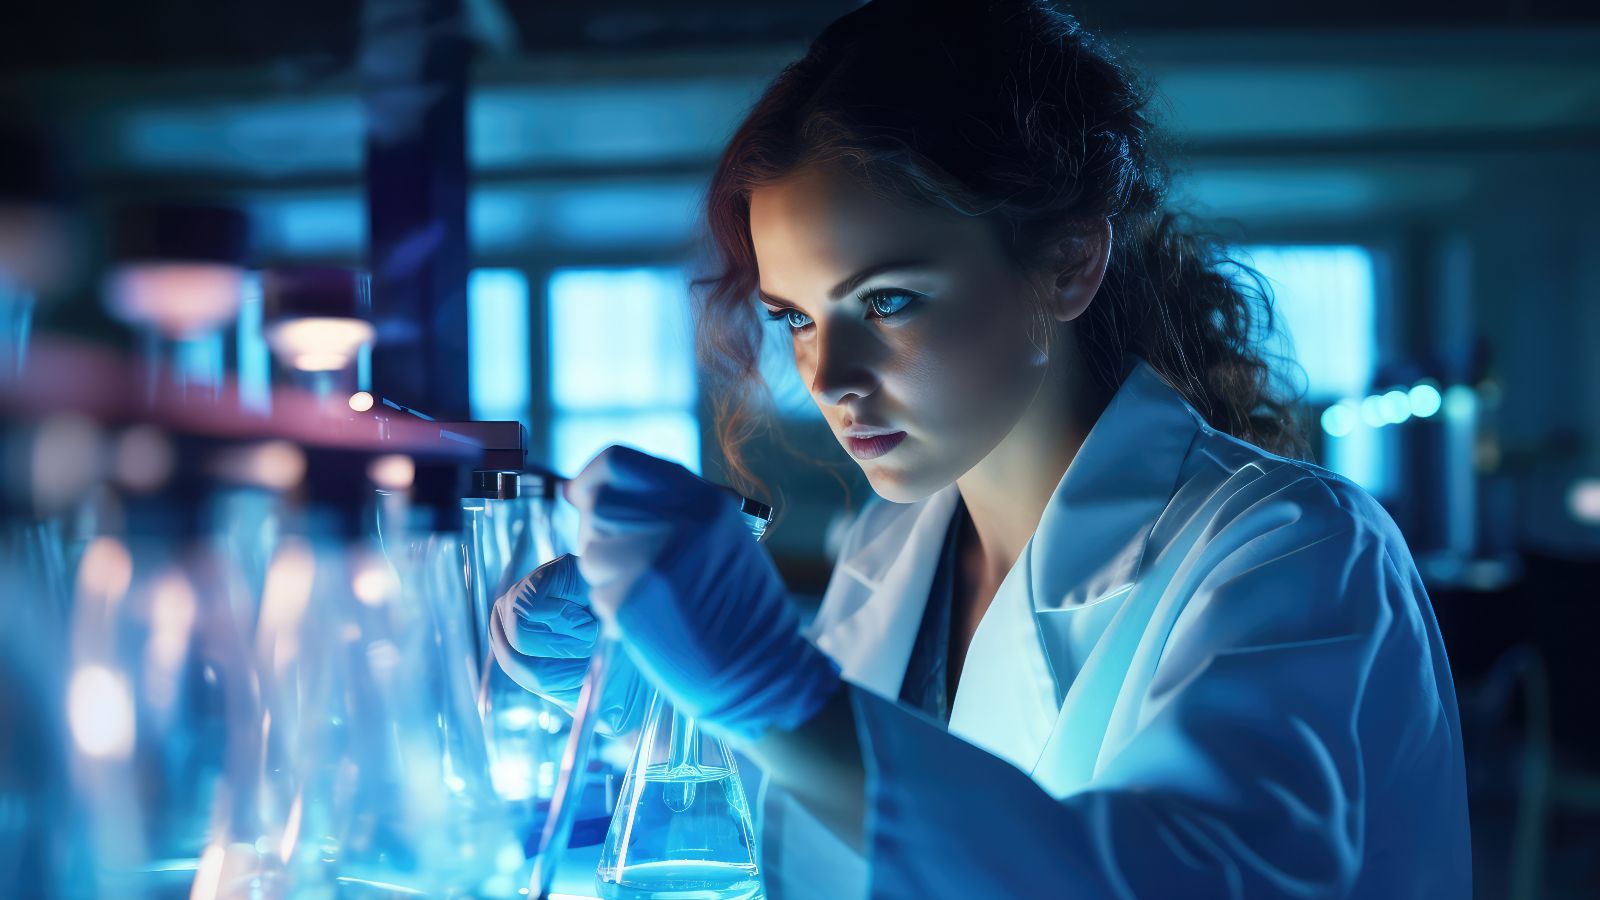 Das Bild zeigt eine junge Wissenschaftlerin, die eine Probe in einen Glaskolben gibt. 